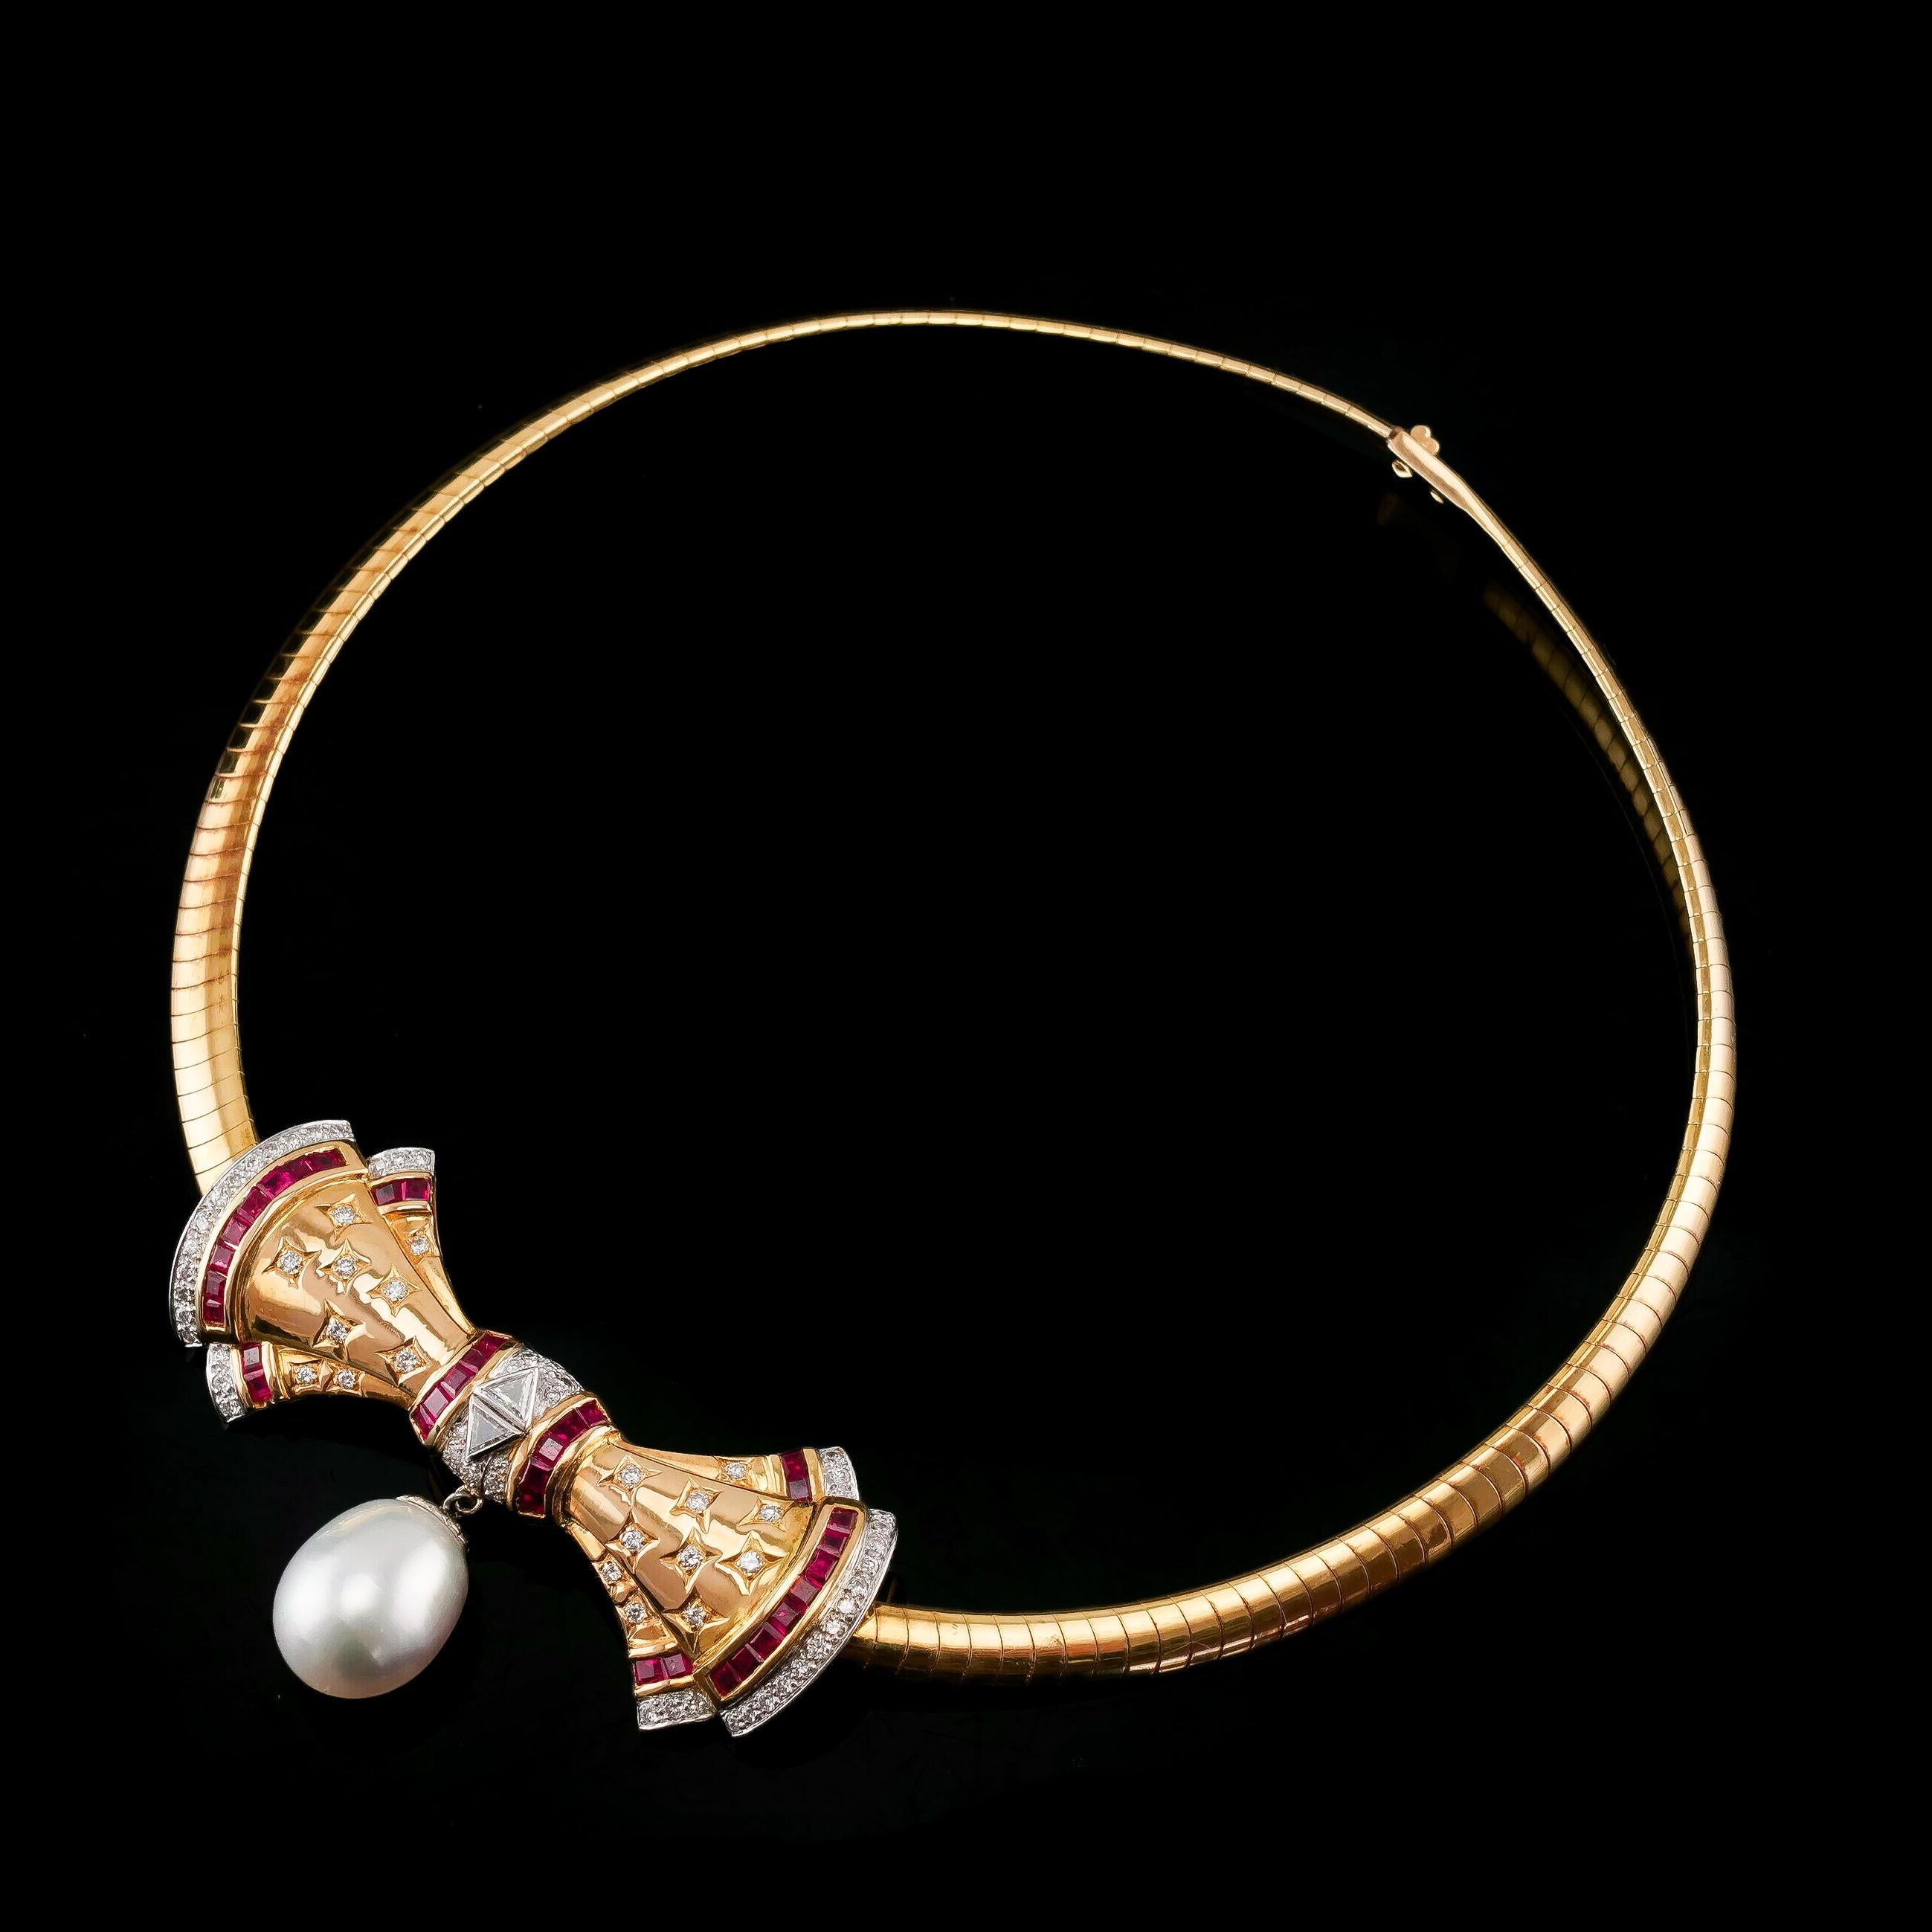 Wir freuen uns, Ihnen diese wunderbare und elegant gestaltete Vintage-Halskette aus 18 Karat Gold anbieten zu können. Die gesamte Kette ist hervorragend gestaltet und verarbeitet, mit einer zentralen Schleife und einem umschließenden